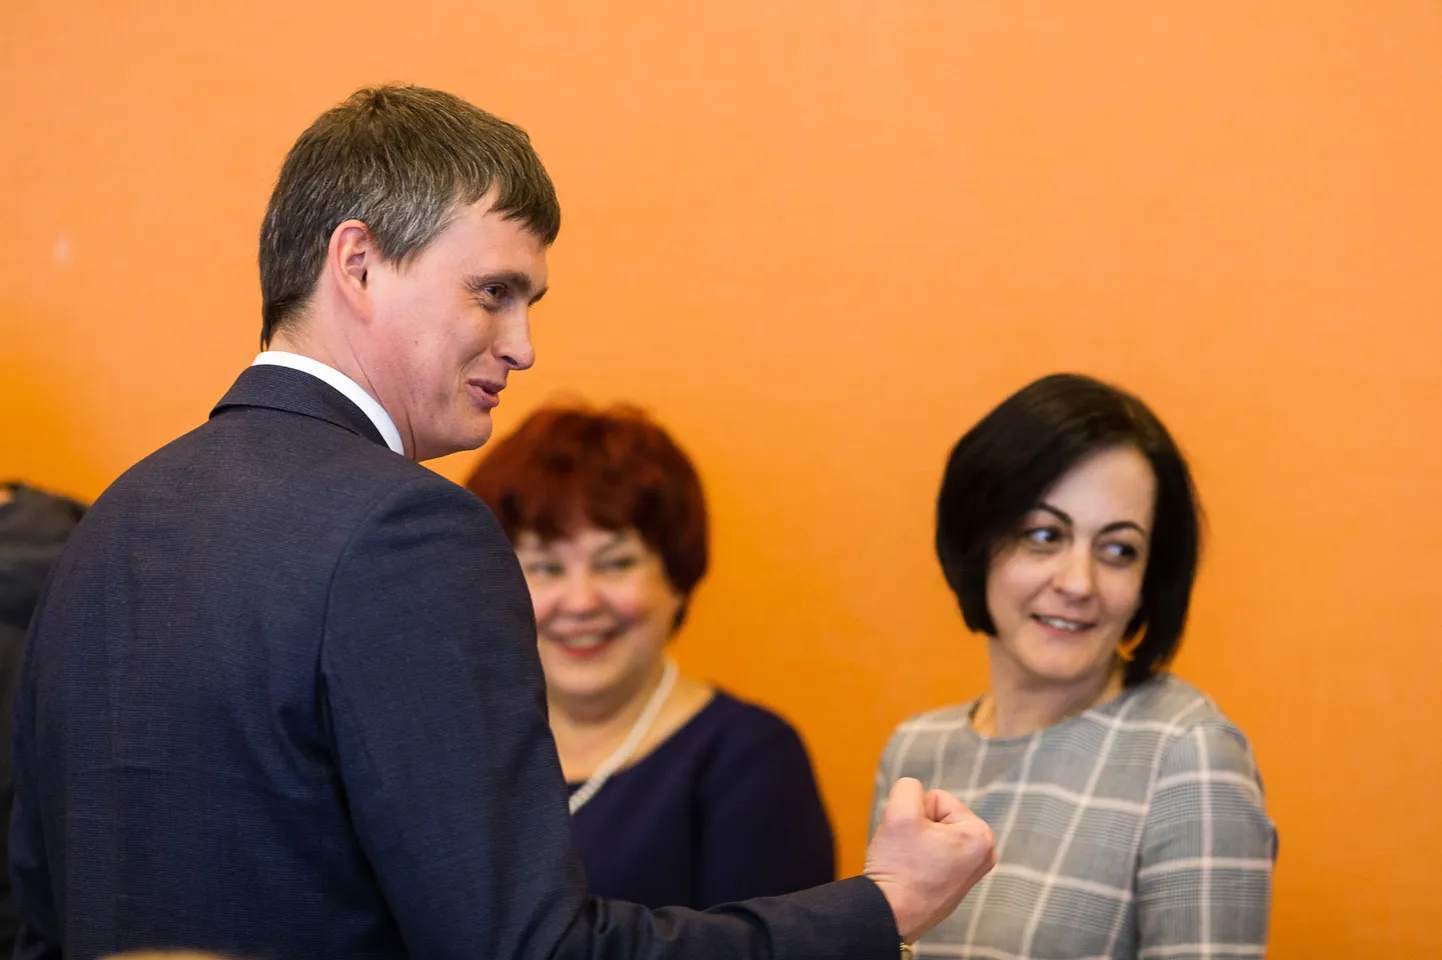 Избранного новым мэром Нарвы Алексея Евграфова считают амбициозным начинающим политиком, но его независимость пока под вопросом. Будучи со школьных лет волейболистом, он сам себя называет командным человеком: "Я не играю в петанк, где каждый за себя".